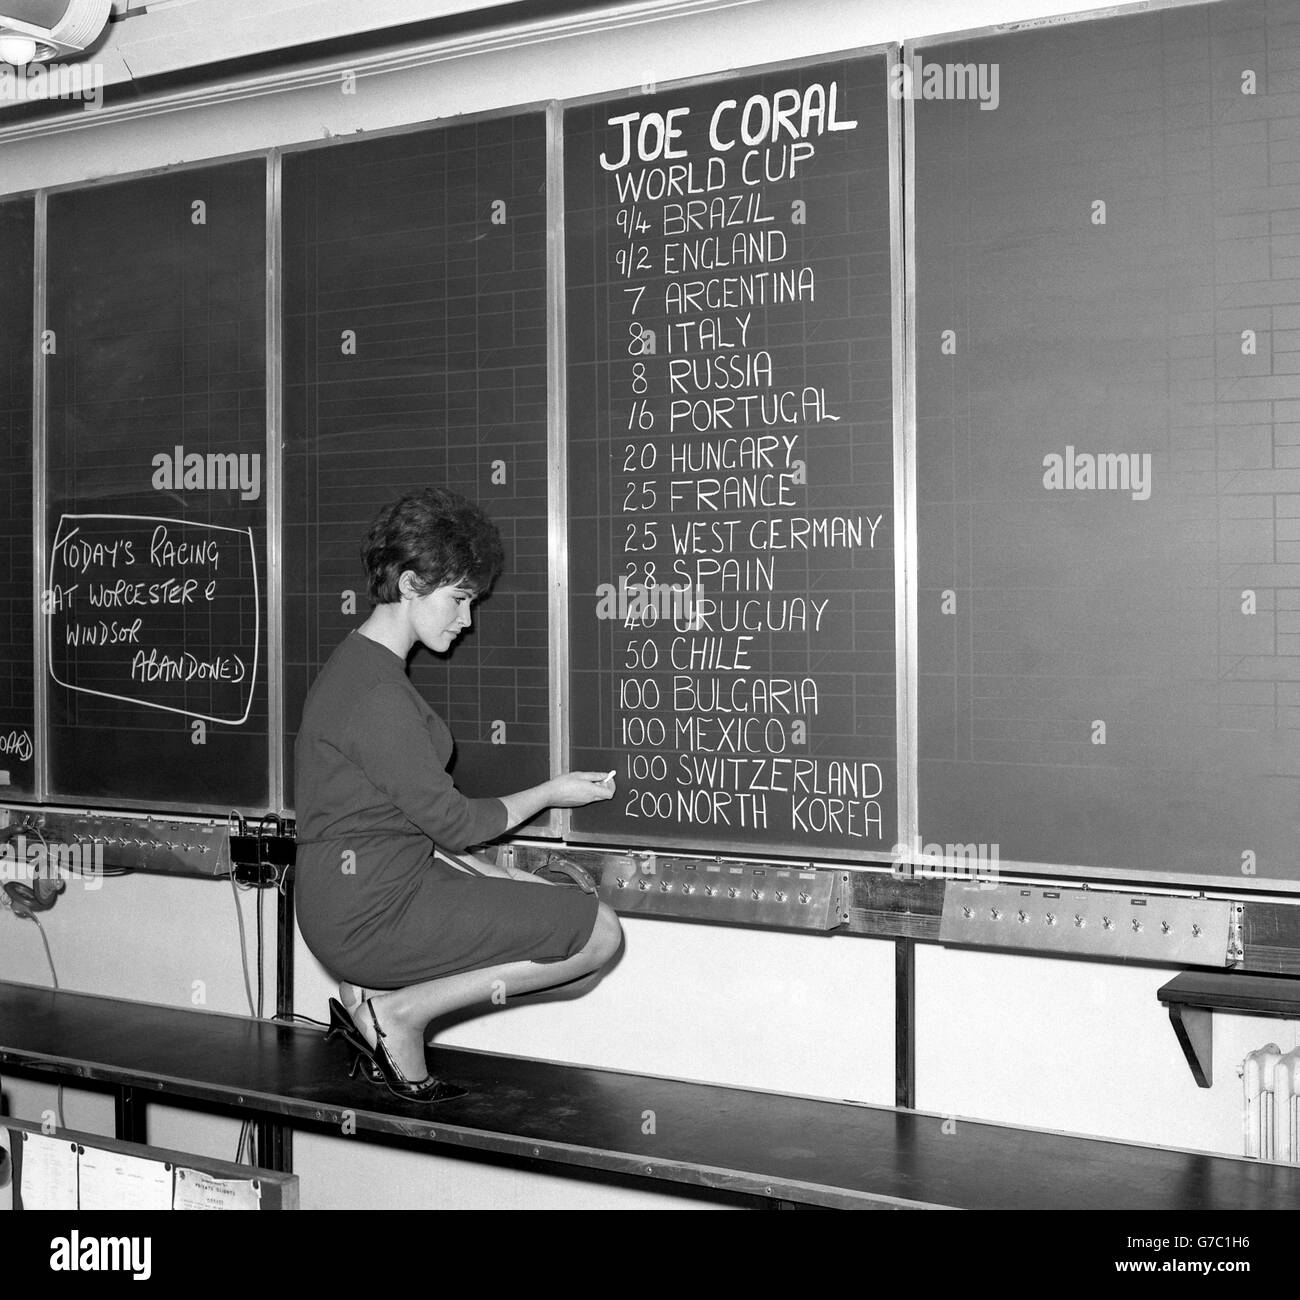 Calcio - Coppa del mondo 1966 - quote scommesse Joe Coral - Regent Street, Londra. Un membro del personale scrive le quote di scommessa su un bordo a Joe Coral Ltd su Regent Street a Londra. Foto Stock